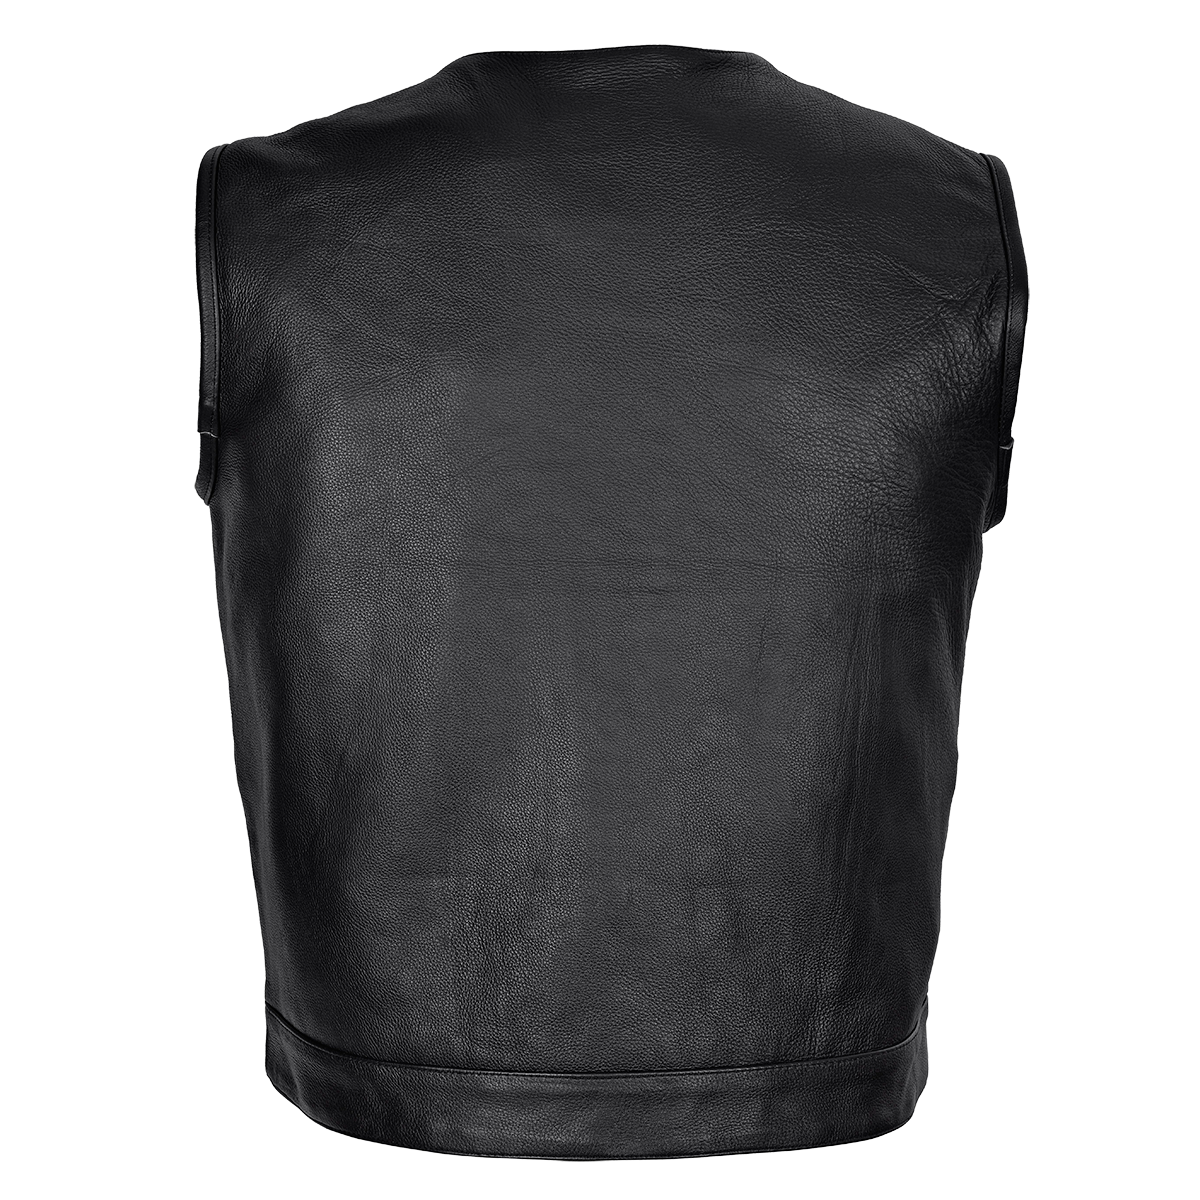 HMM919BP Men's Leather Club Vest / Quick Access Gun Pocket w/Paisley Liner